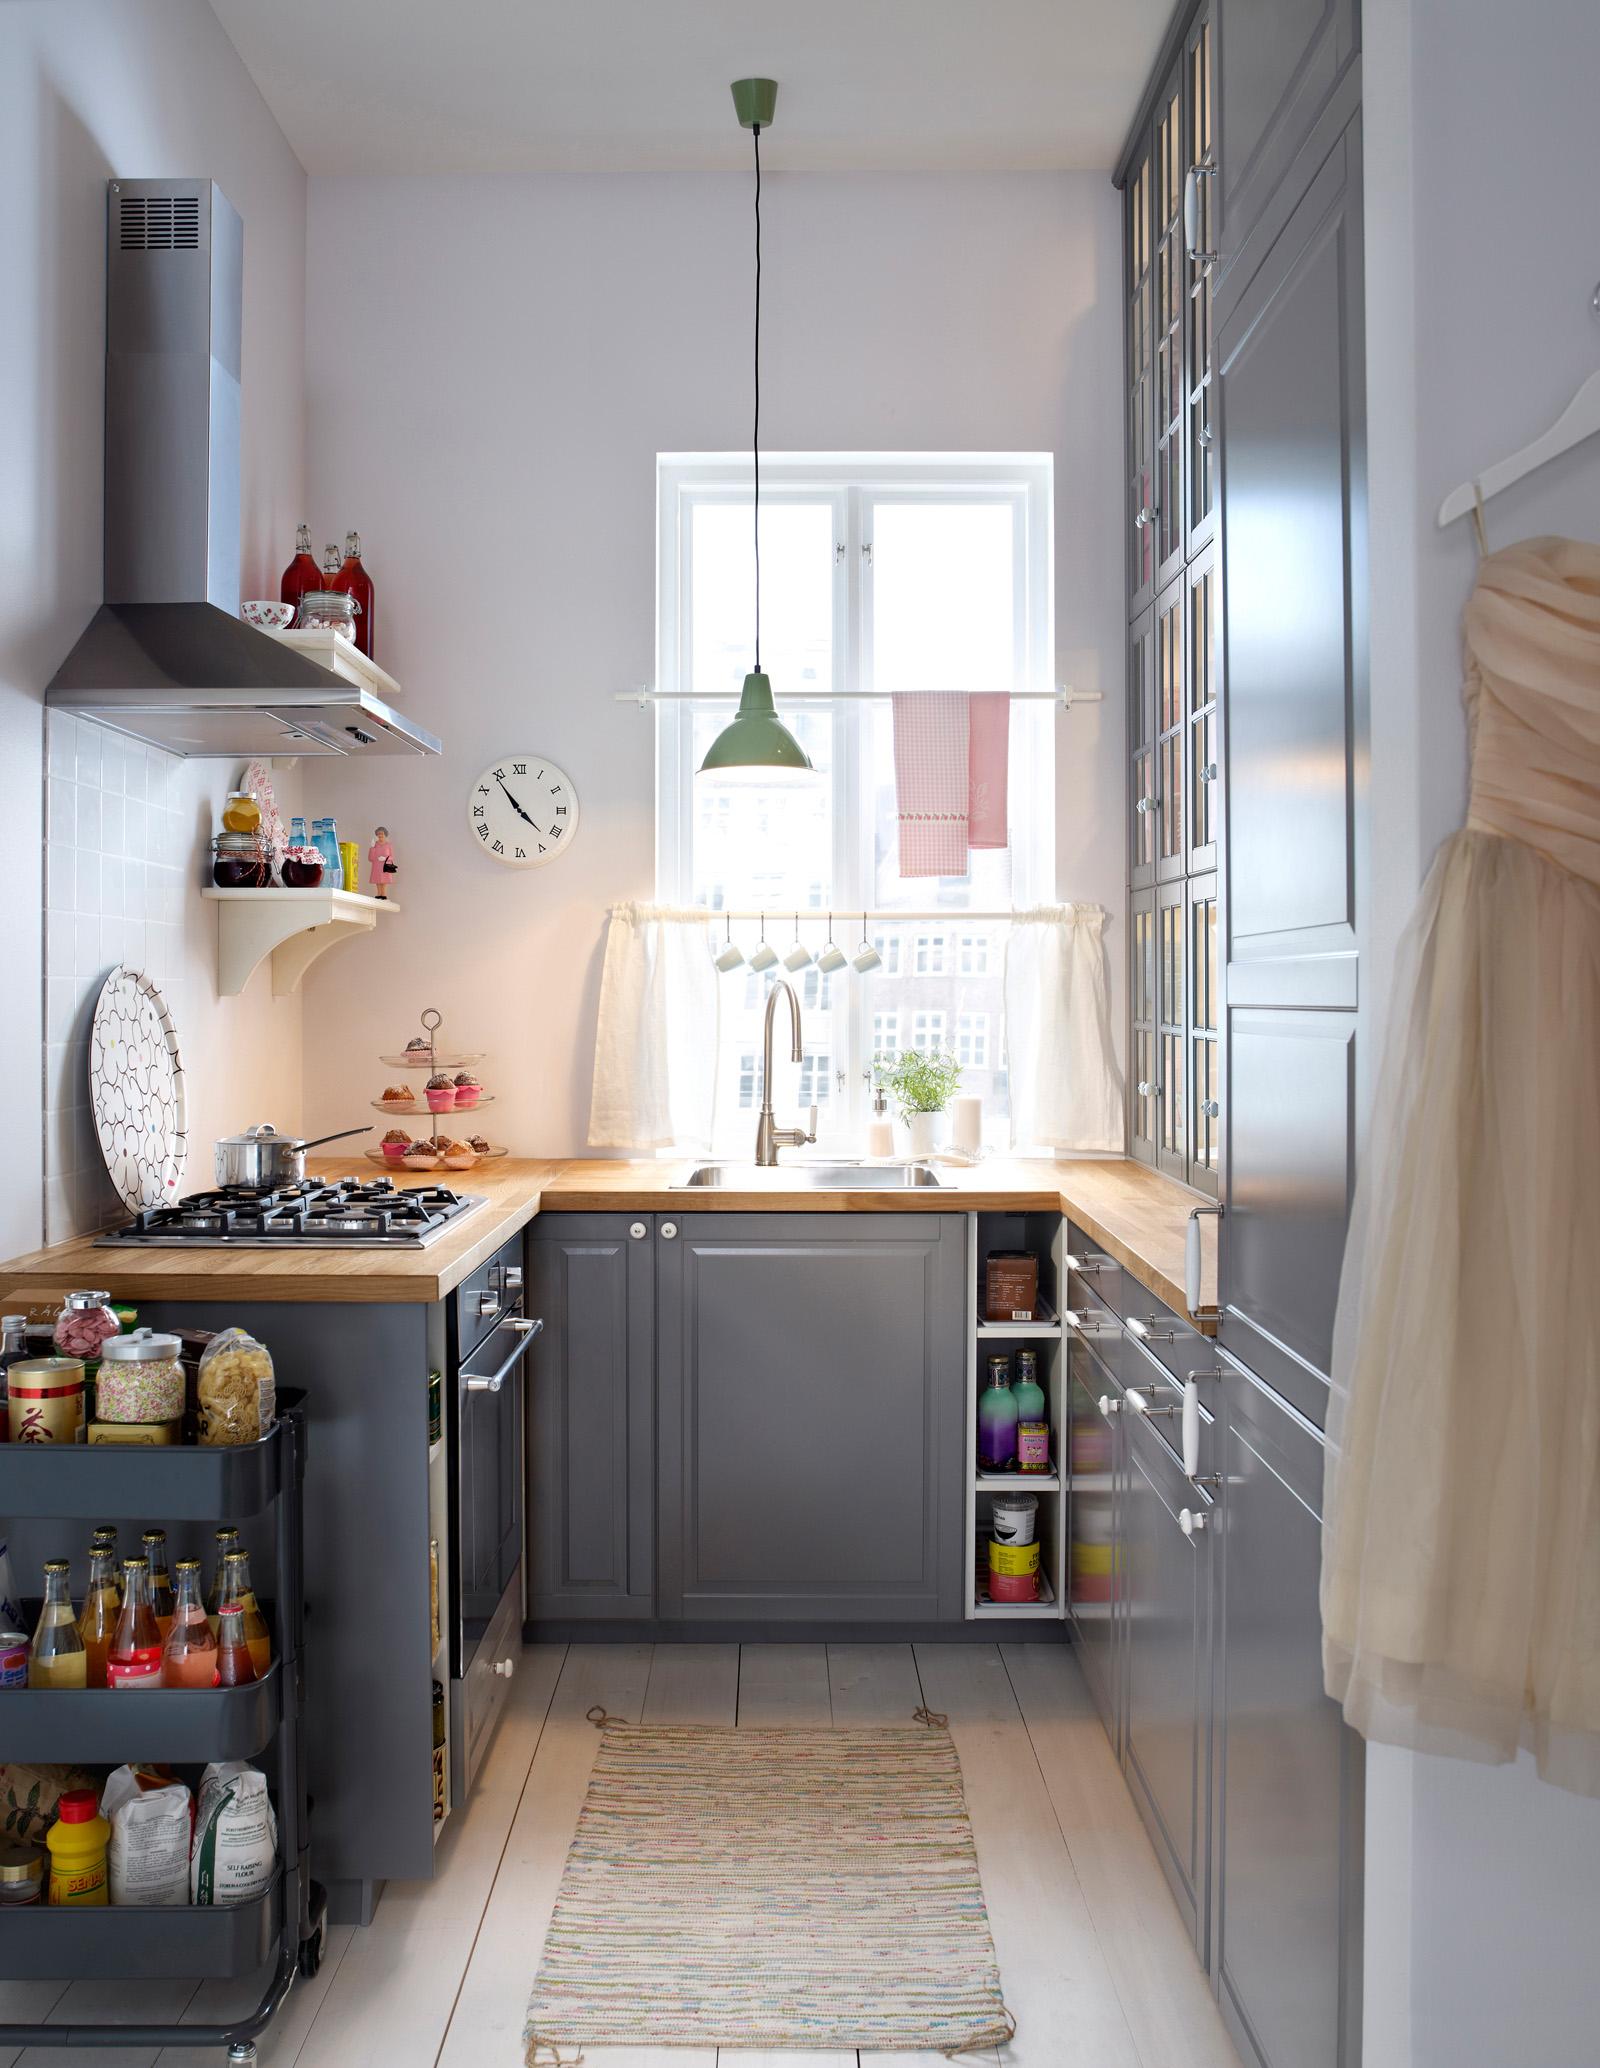 Stauraum in der kleinen Küche #teppich #aufbewahrung #ikea #pendelleuchte #handtuchhalter #küchengestaltung #kleineküche #singleküche #miniküche ©Inter IKEA Systems B.V.